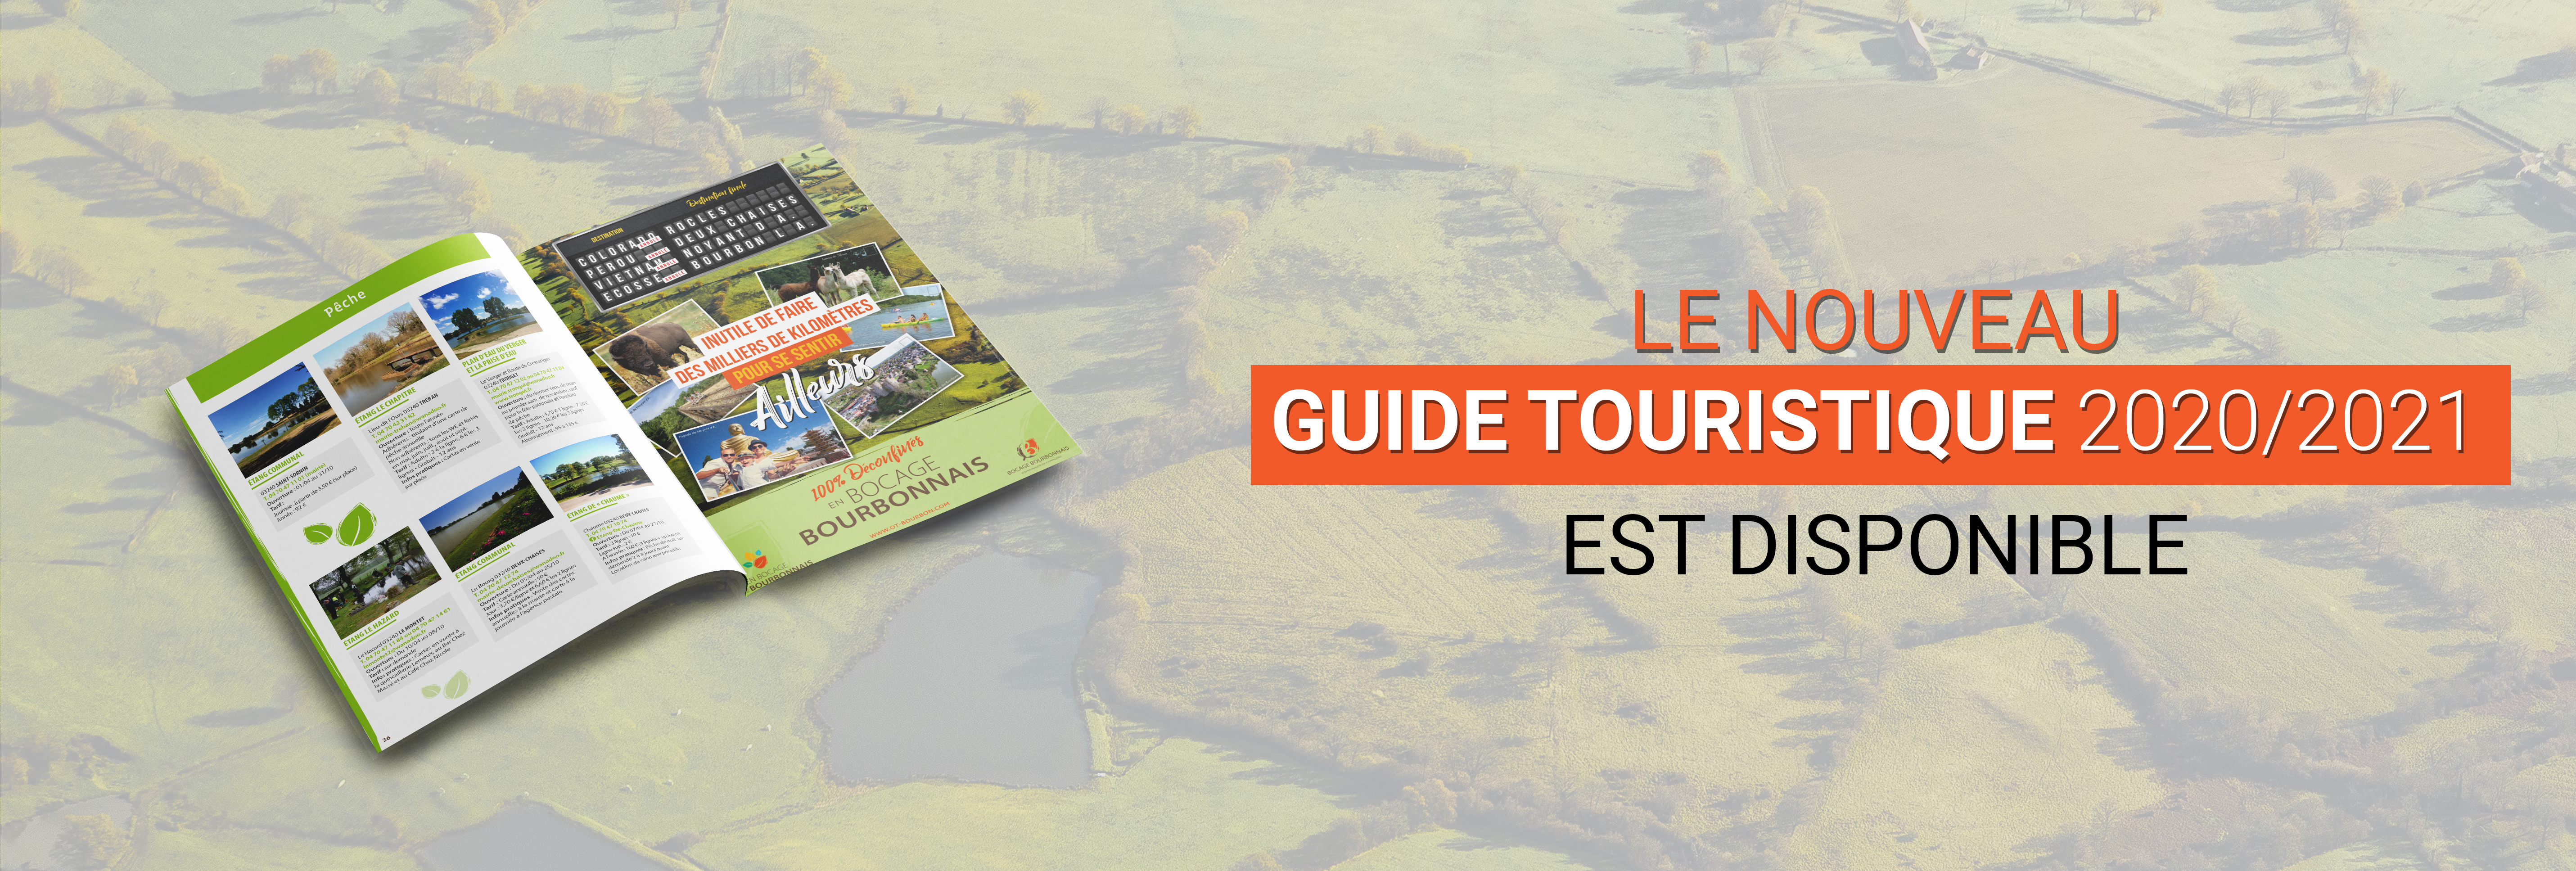 Le guide touristique 2020/2021 est disponible